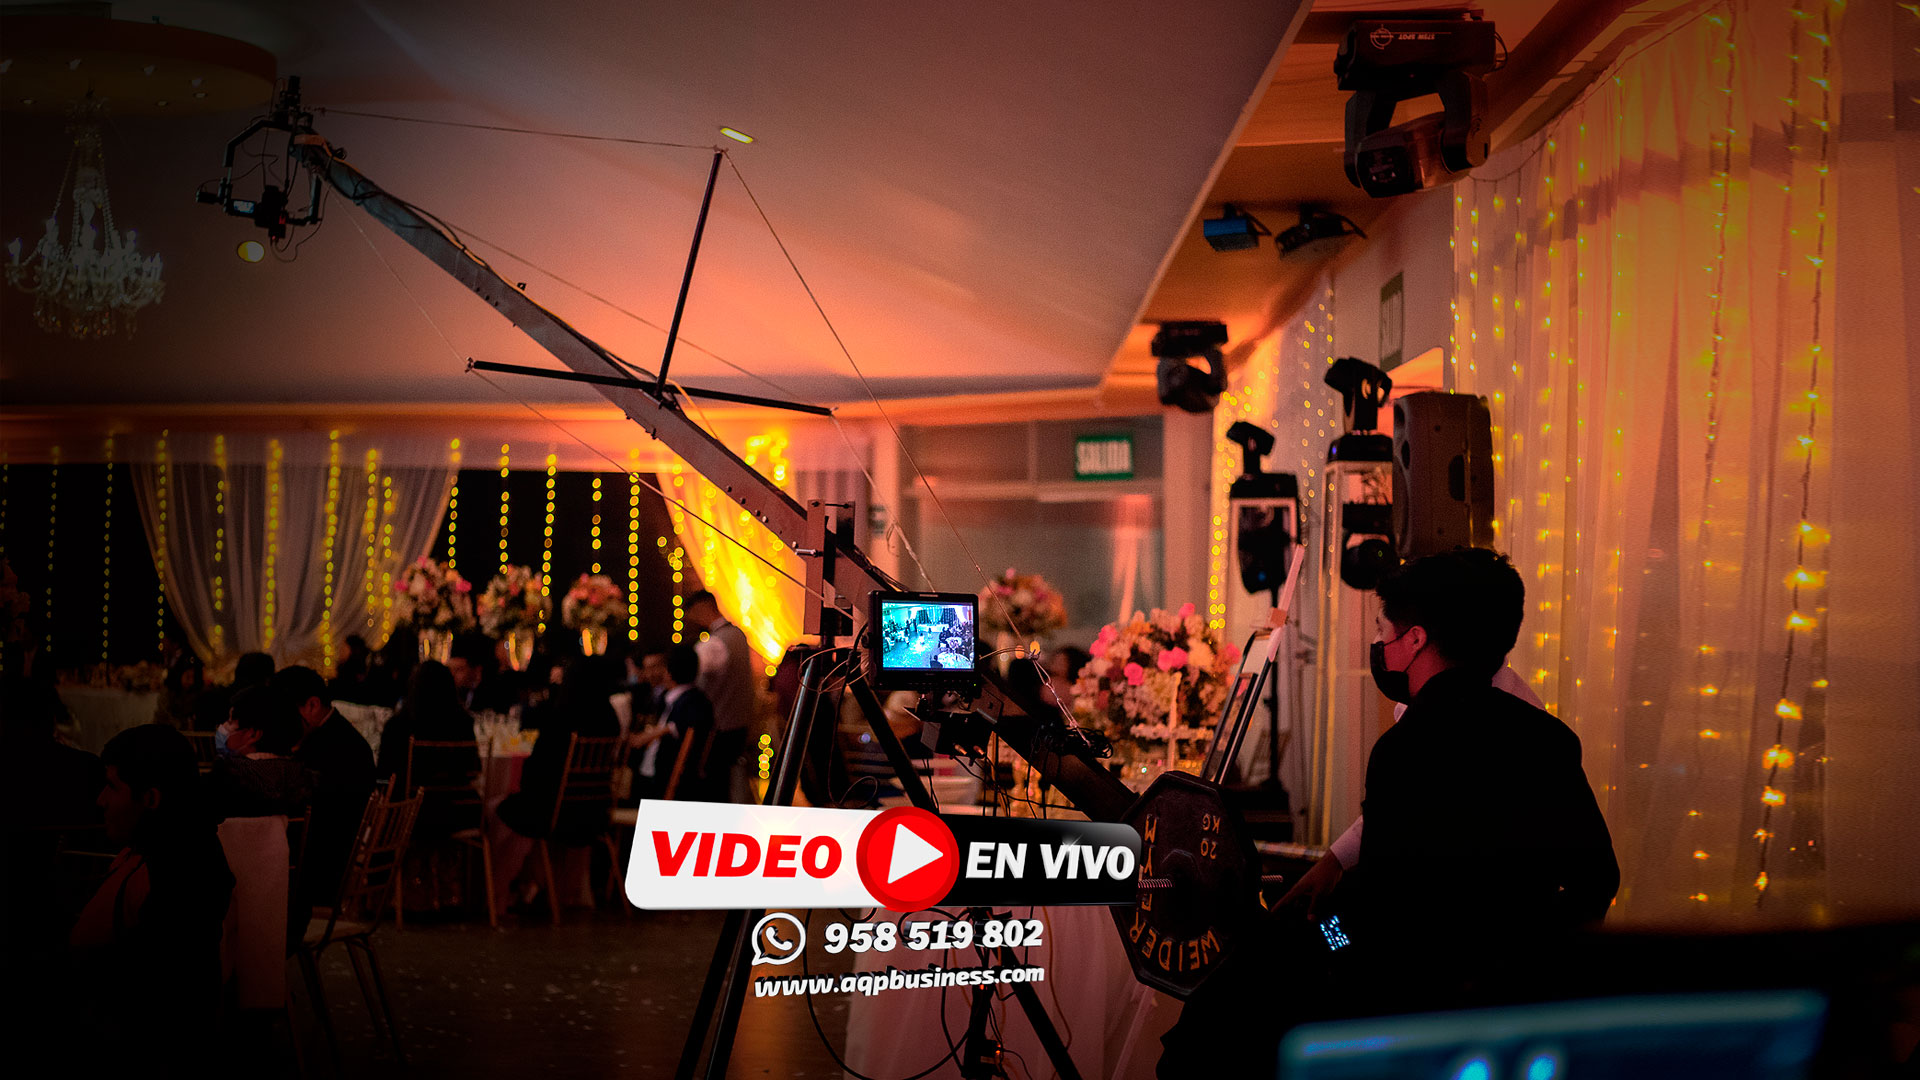 vide y fotografia para bodas y aniversarios. Live Streaming. Peru